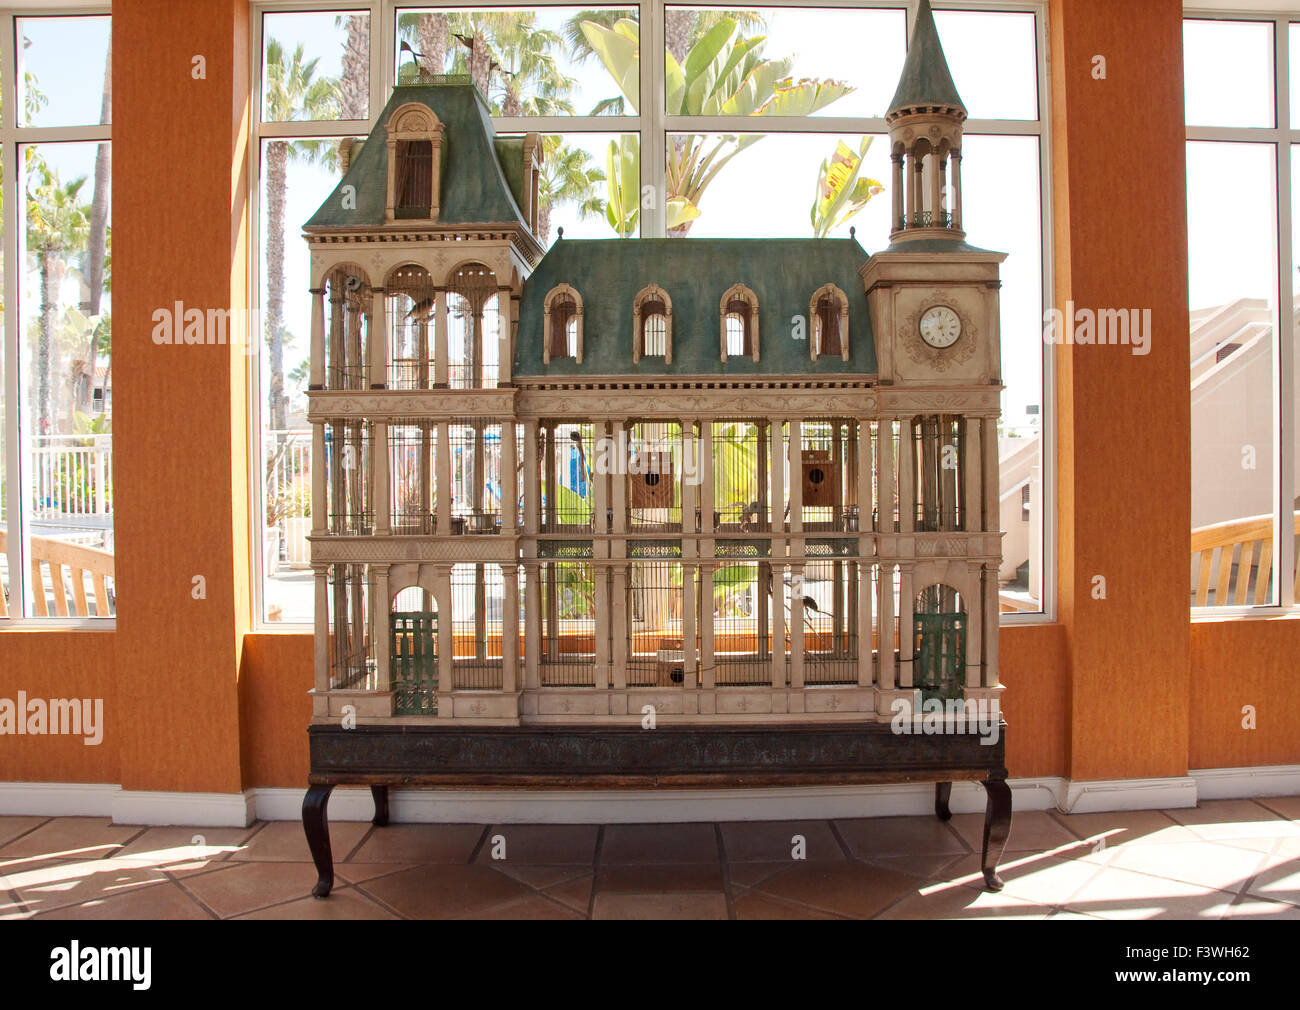 Amazing French Chateau Style Birdhouse Stock Photo 88458106